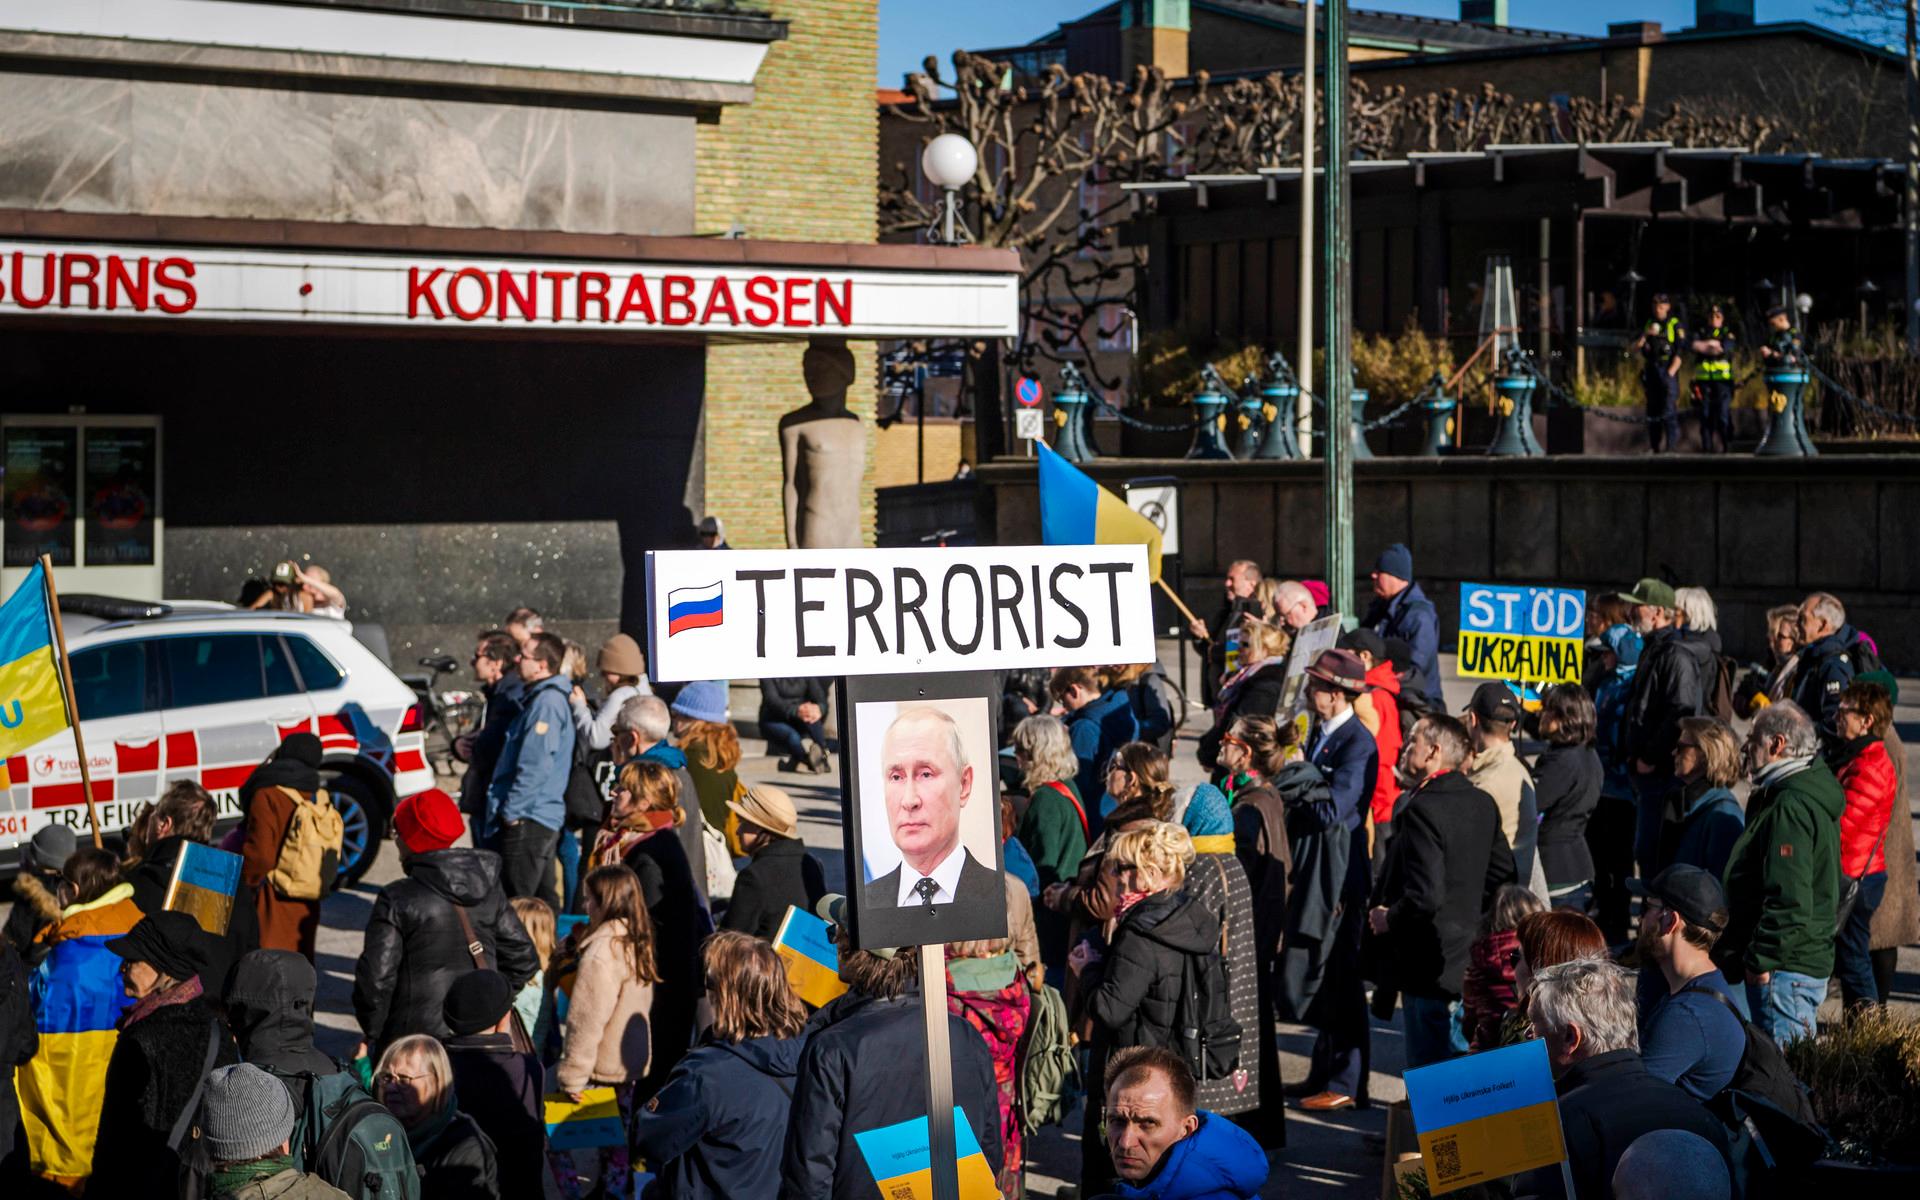 Sedan invasionen inleddes har flera demonstrationer i såväl större som mindre skala hållits runtom i både Göteborg och i Sverige.